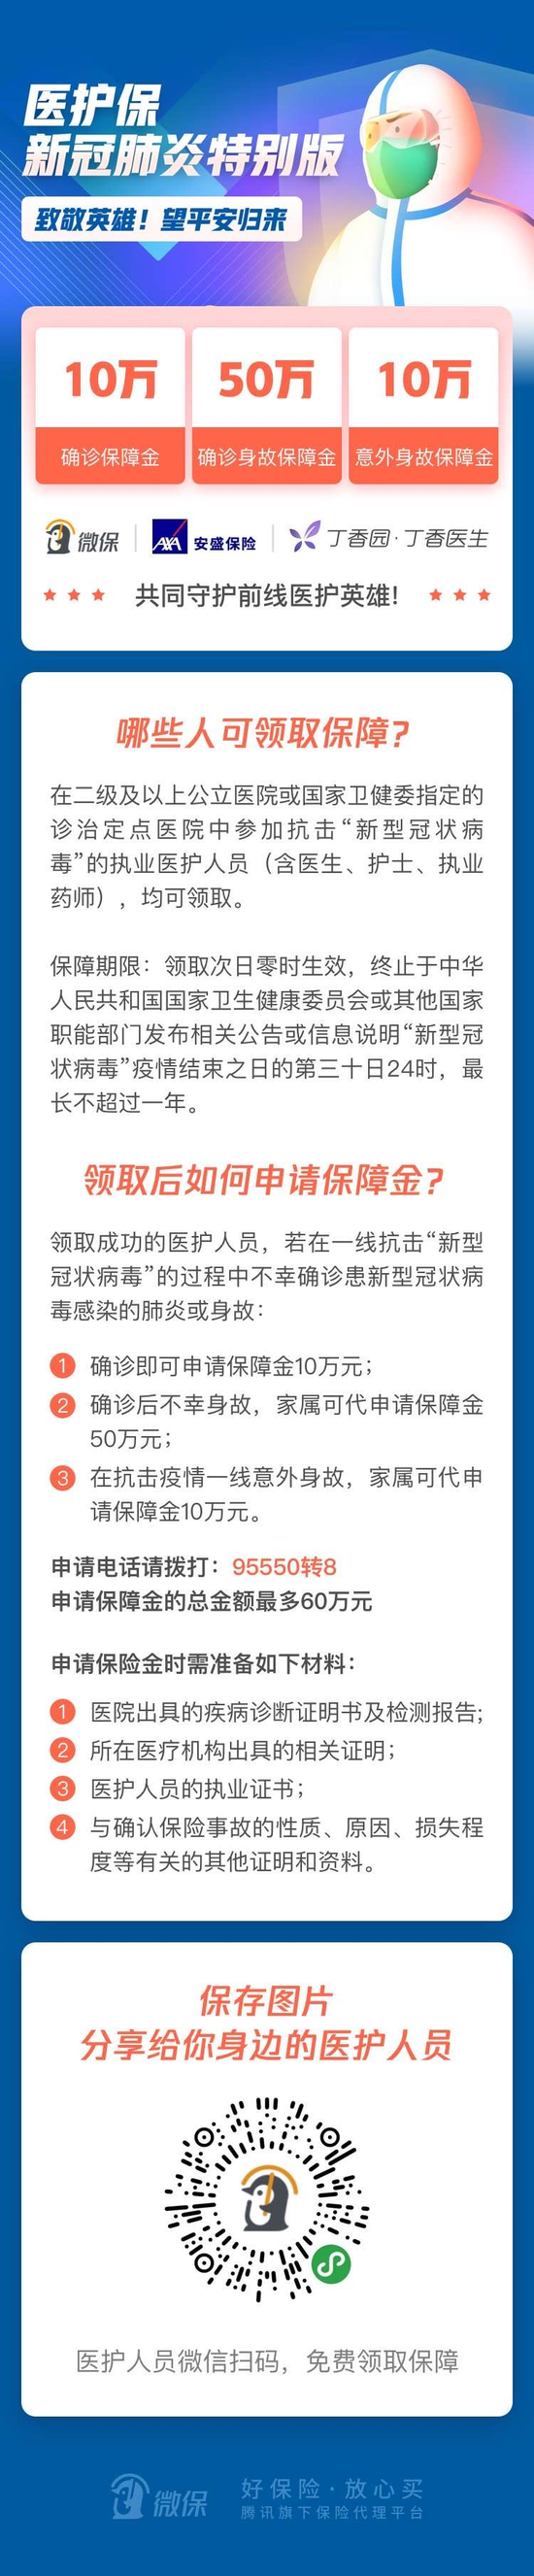 中国人寿向武汉新冠肺炎疫情一线医护人员捐赠保险 每人保障额度为50万元